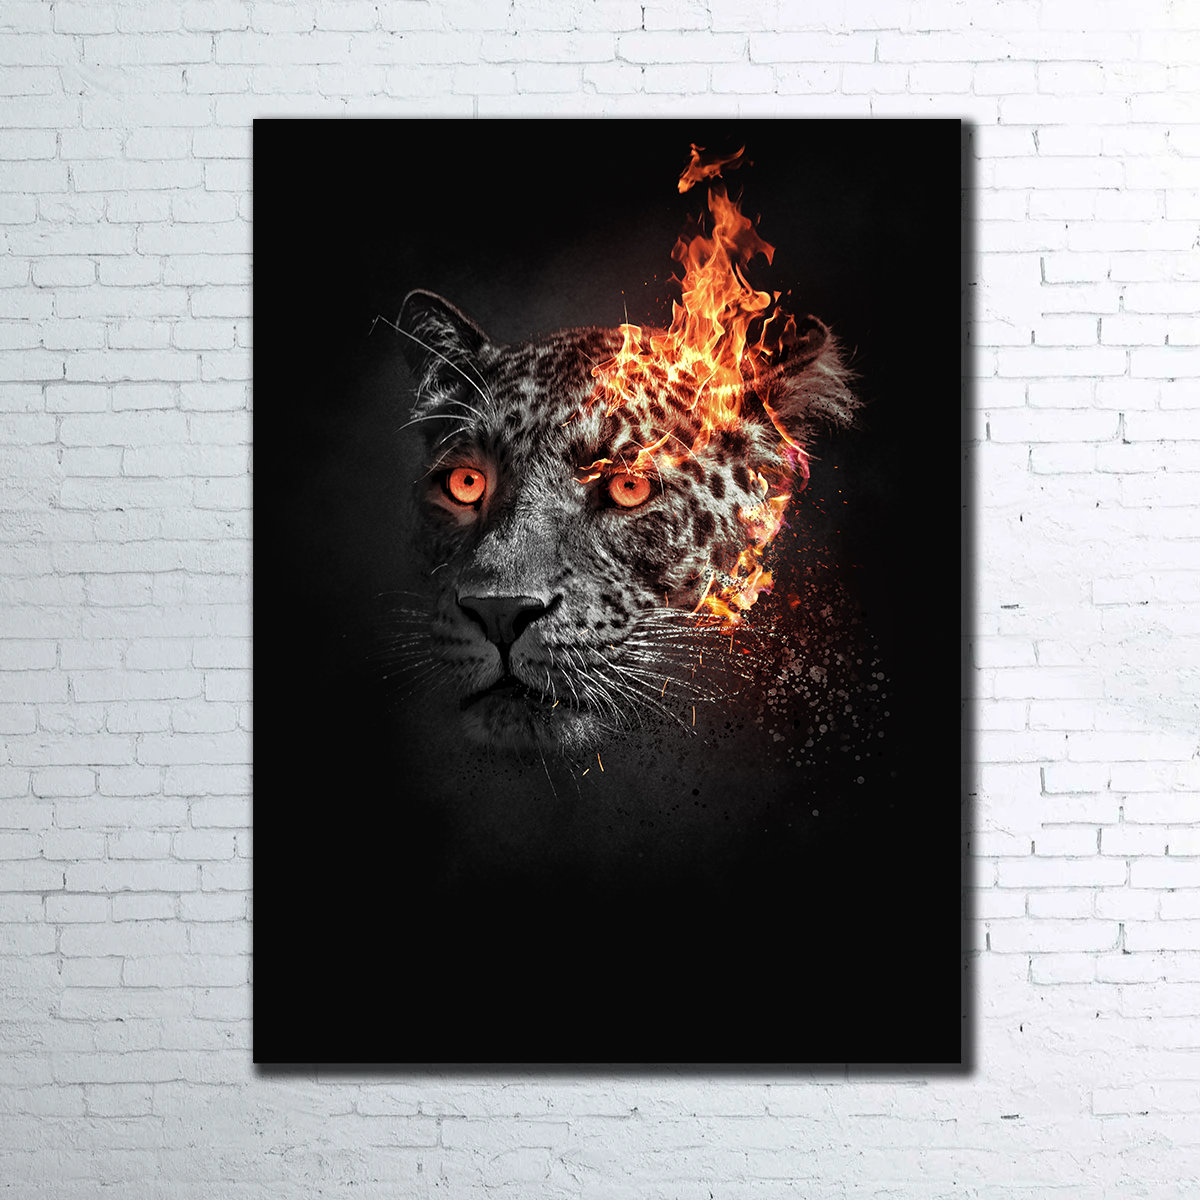 Jaguar on Fire